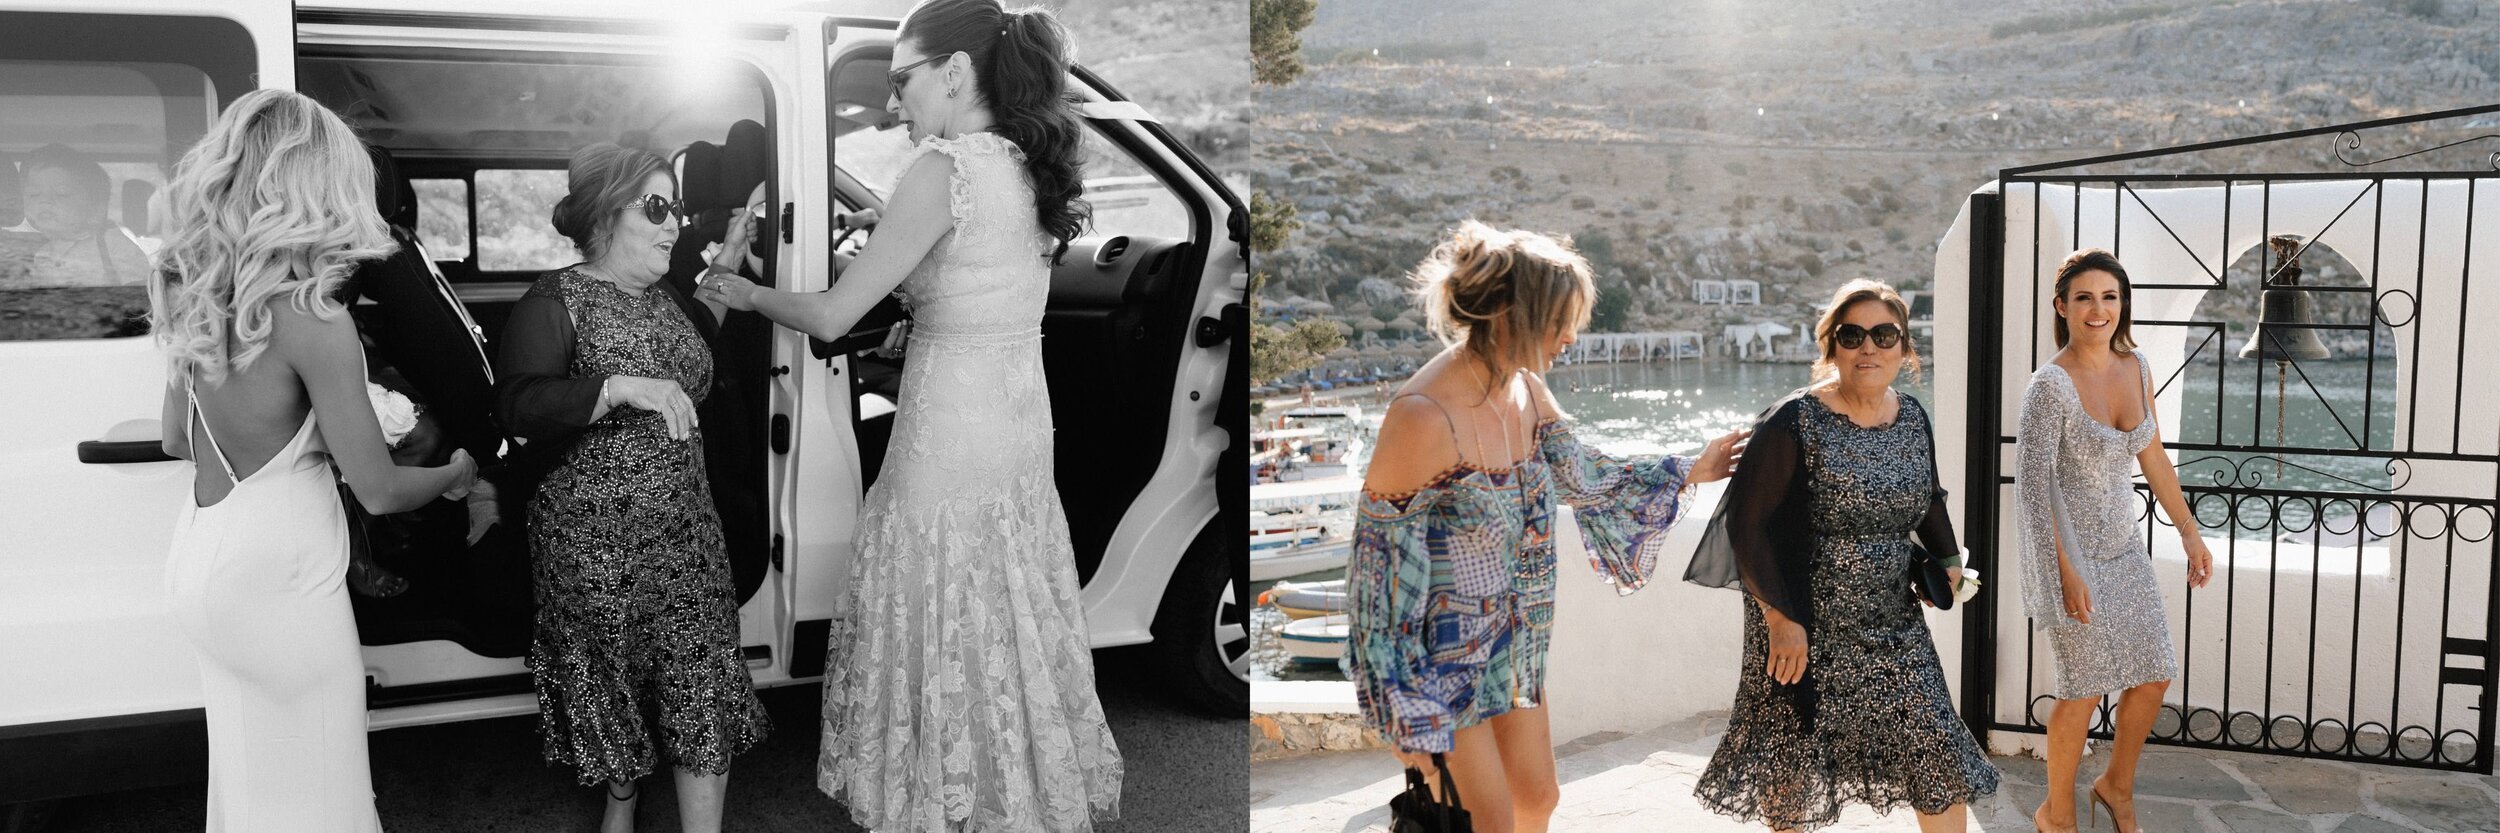 Greece+Santorini+Rhodes+wedding+photogtaphy+-+82.jpg